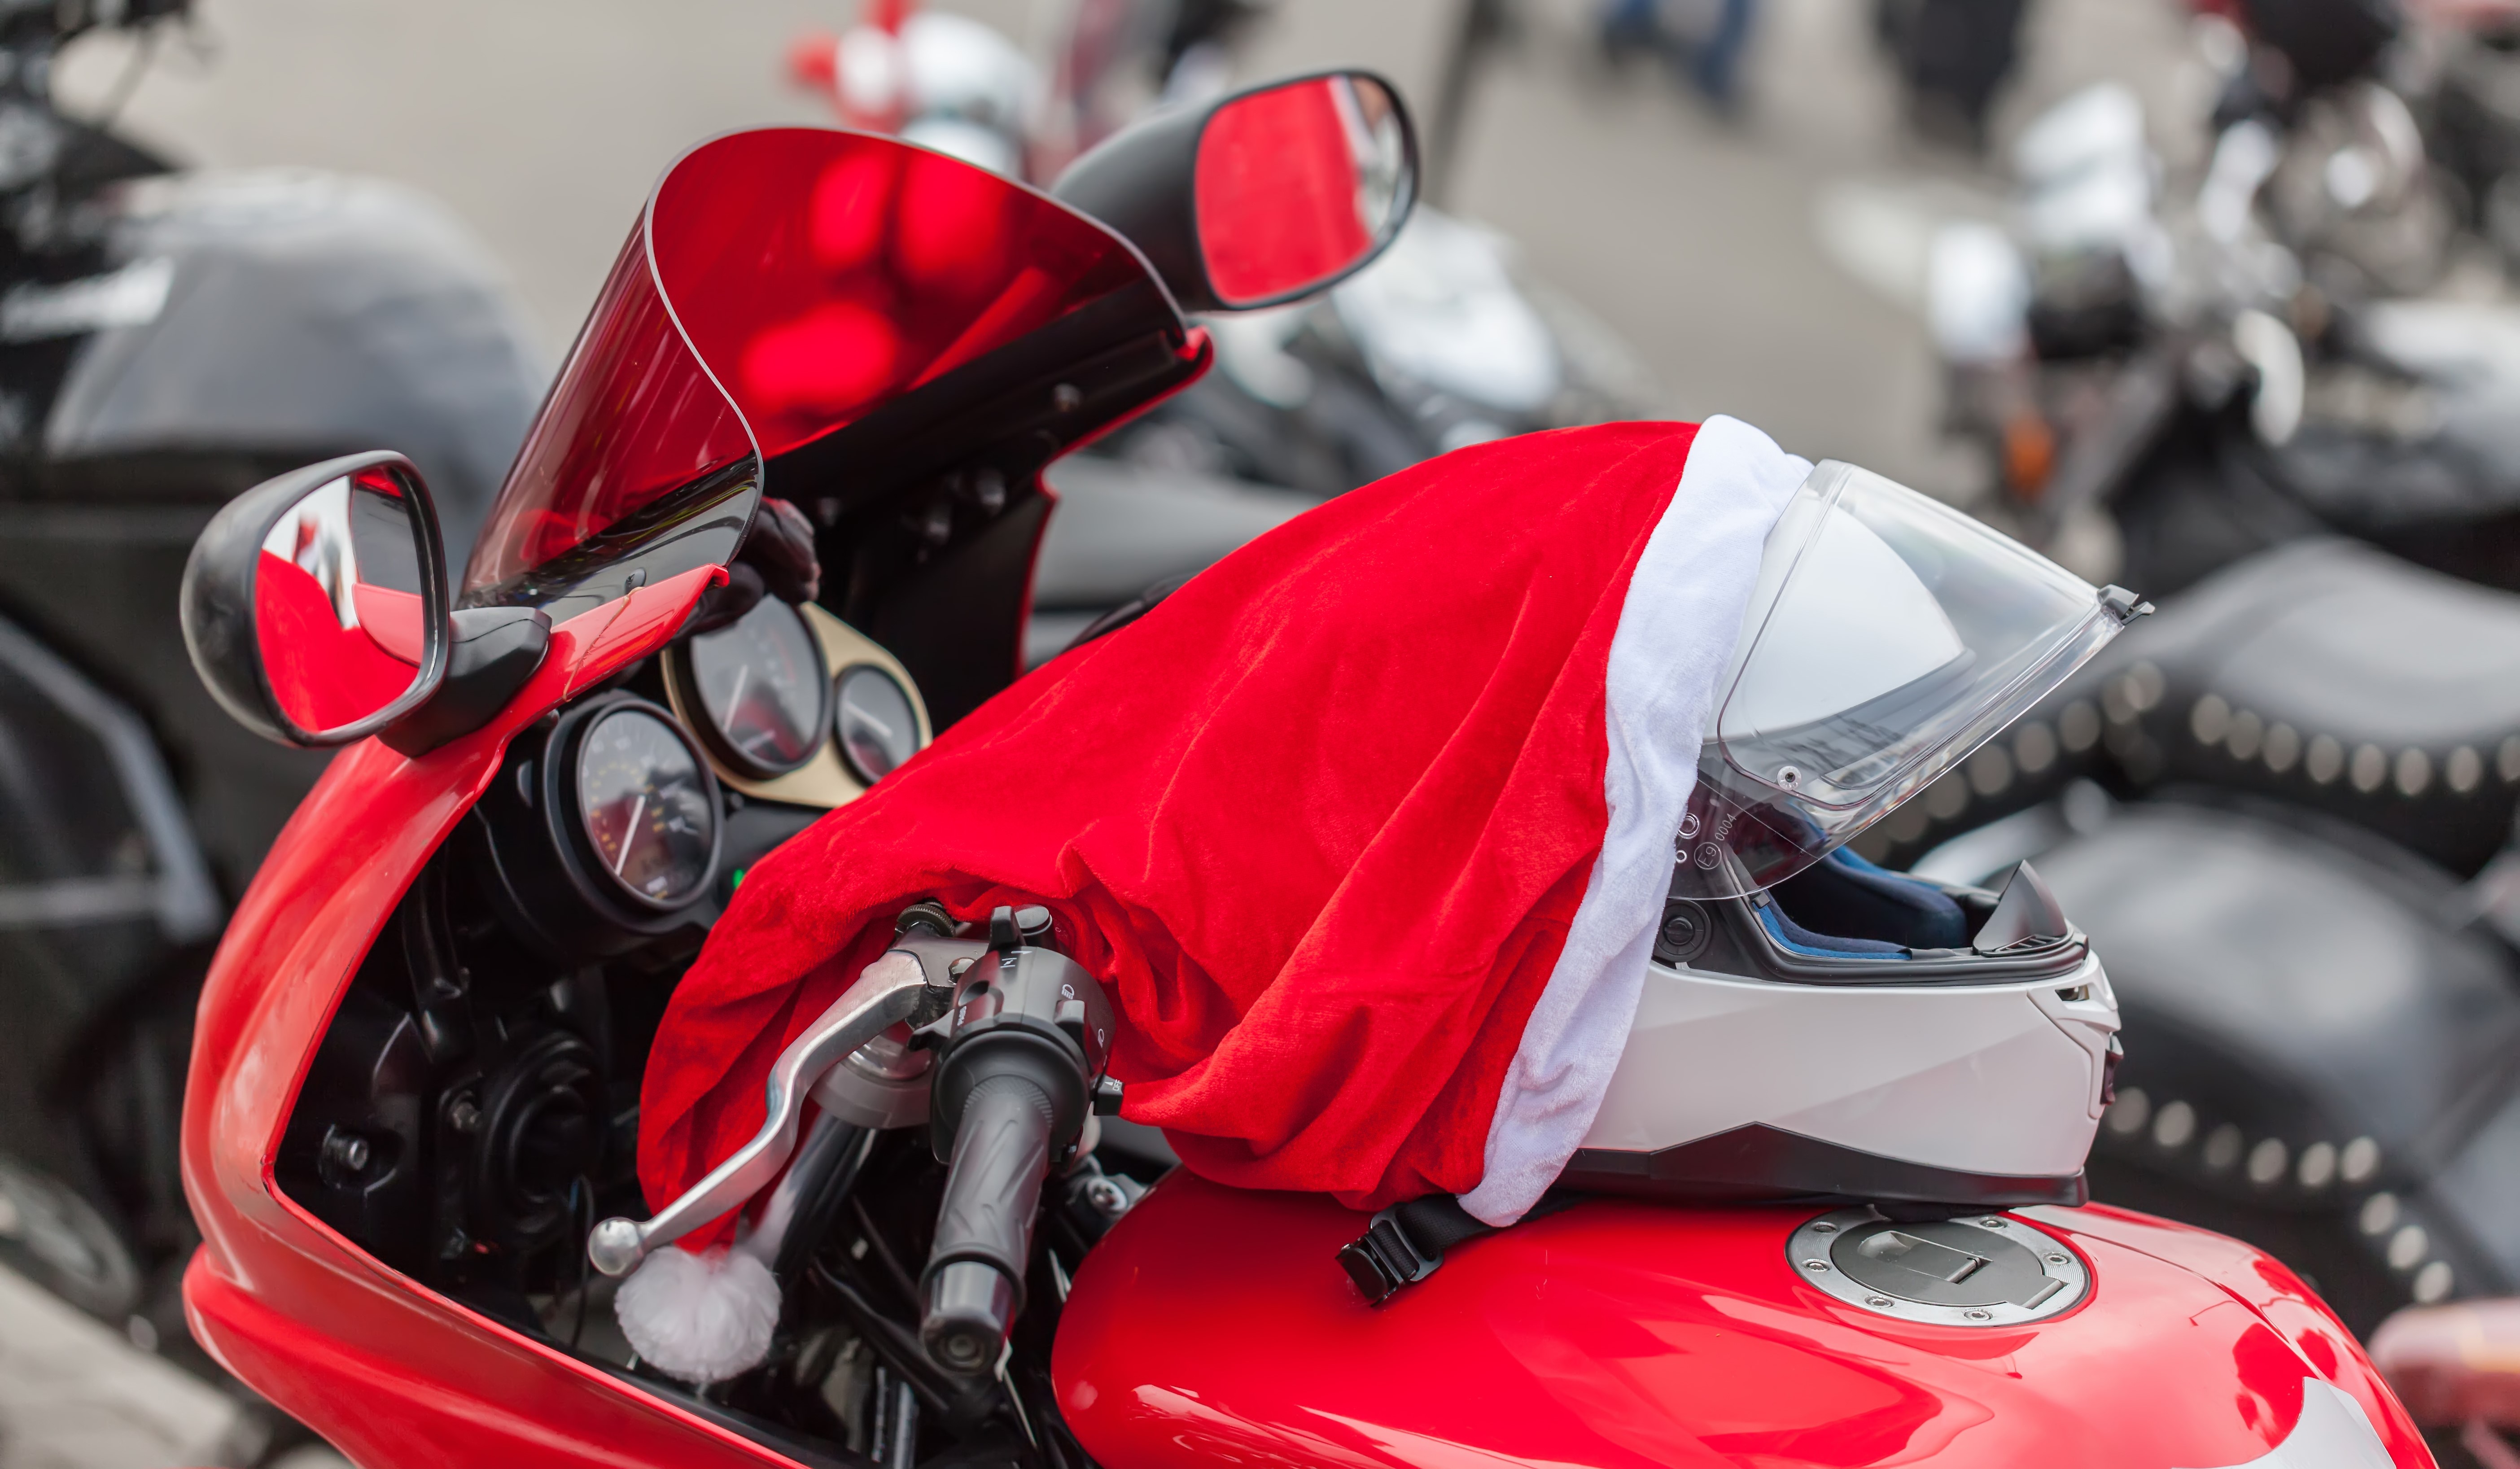     Des pères et mères Noël à moto offrent des cadeaux aux enfants d'un foyer de Saint-Joseph

